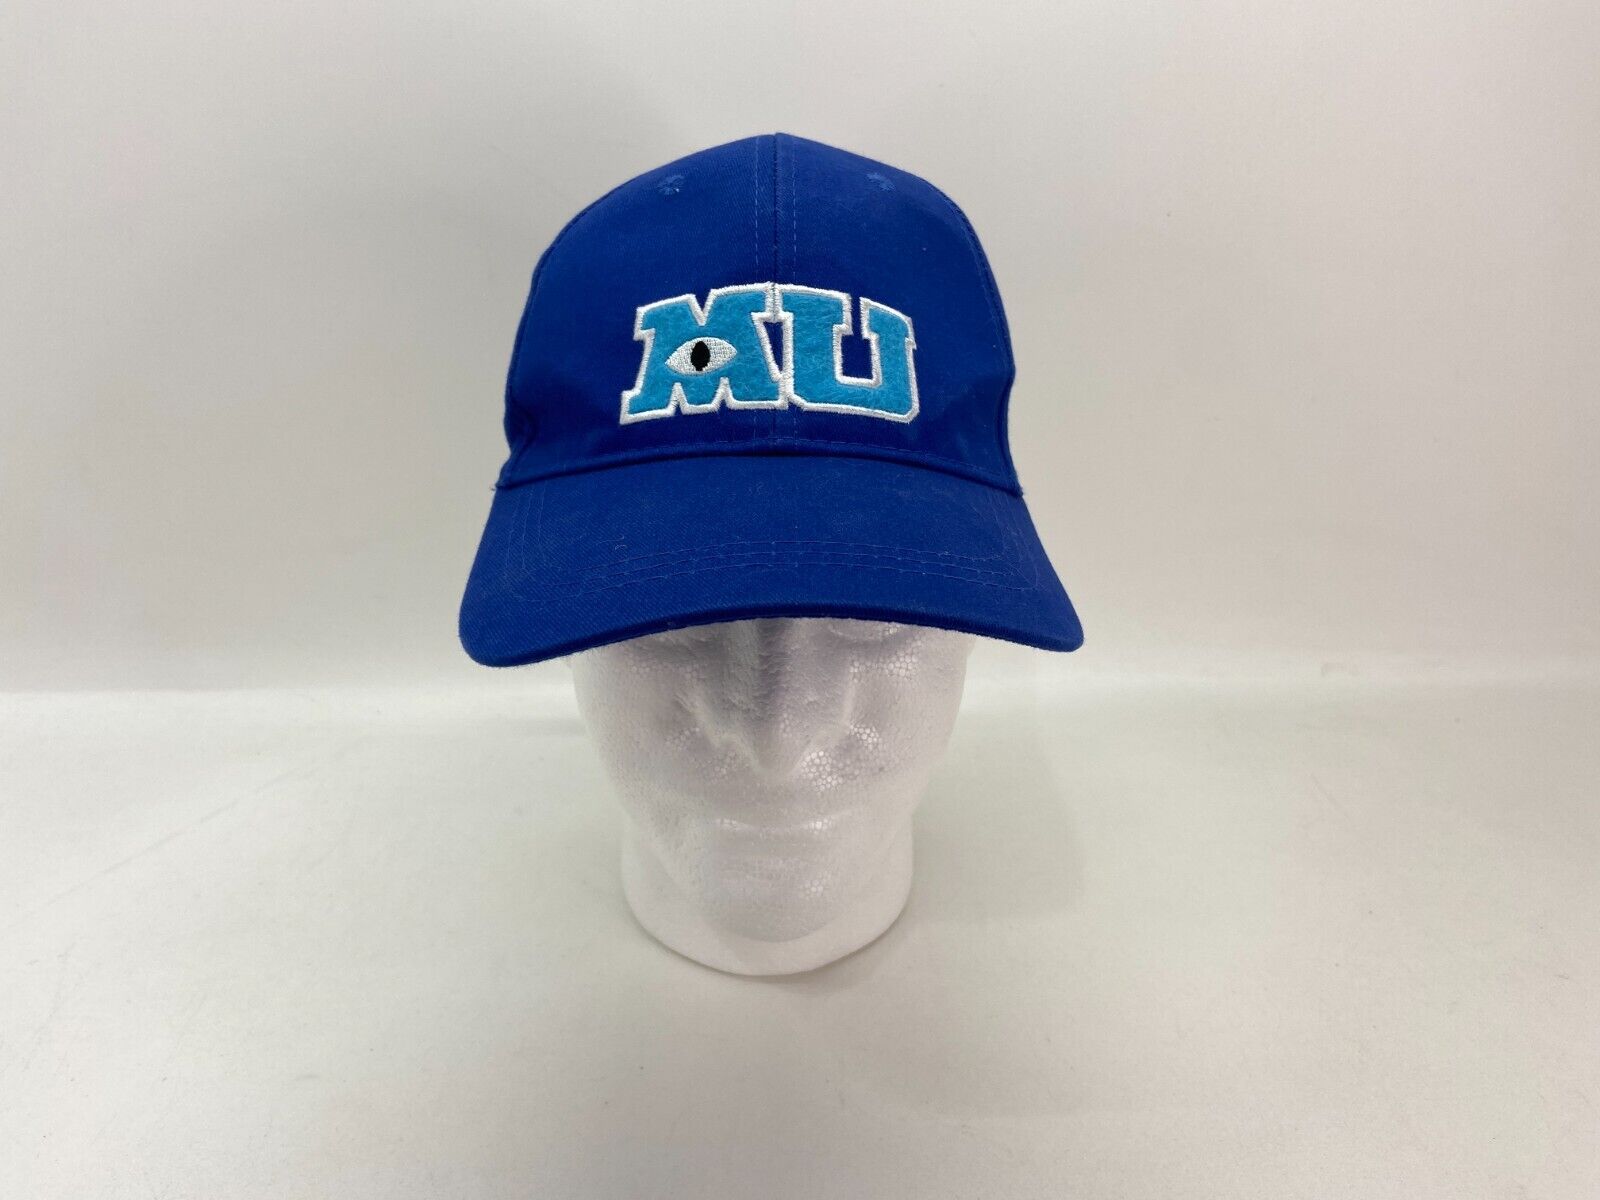 monters university MU baseball hat